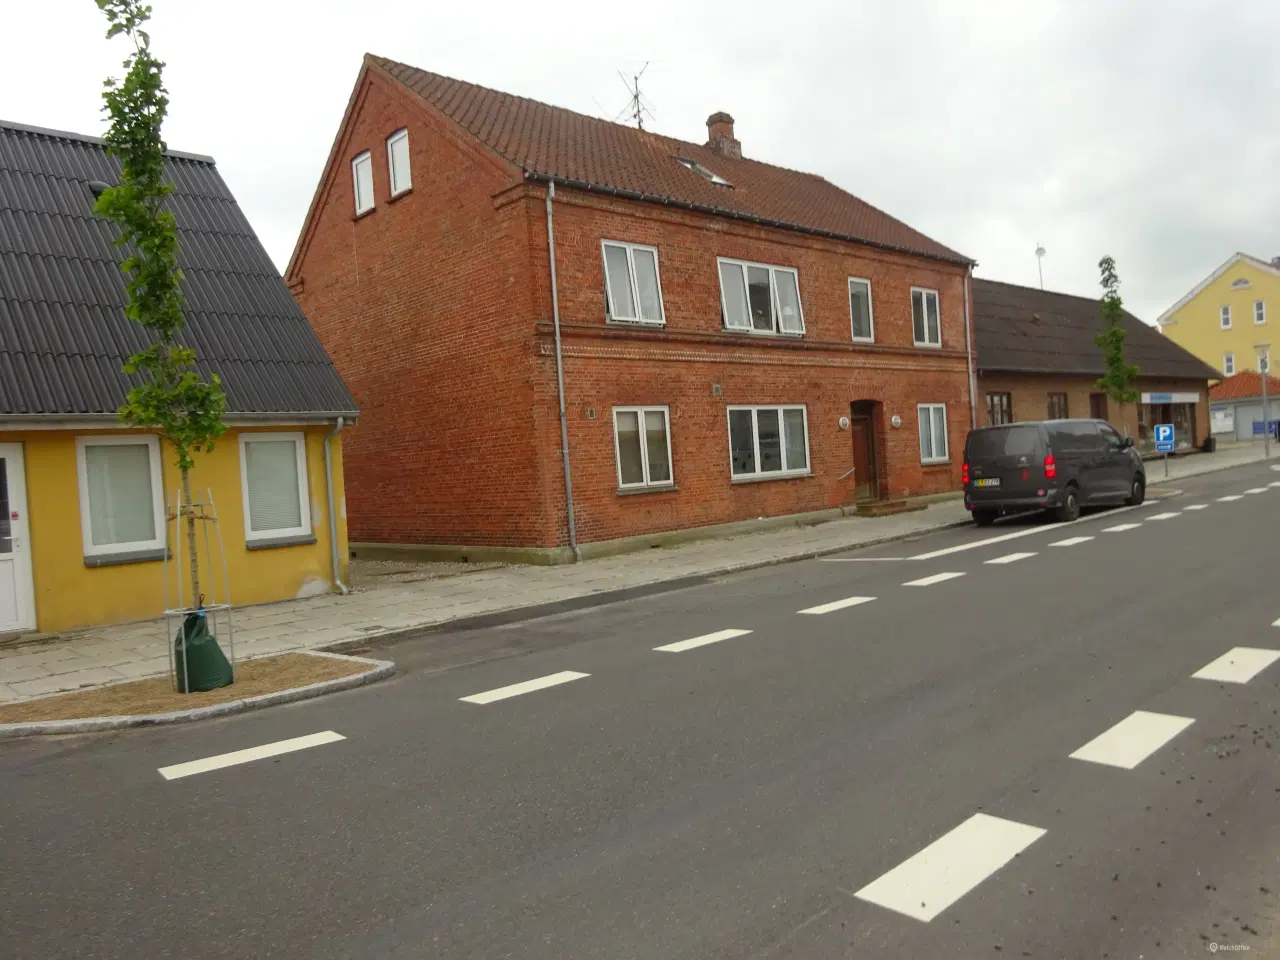 Billede 1 - Udlejnings ejendom i Aalestrup med 4 lejemål